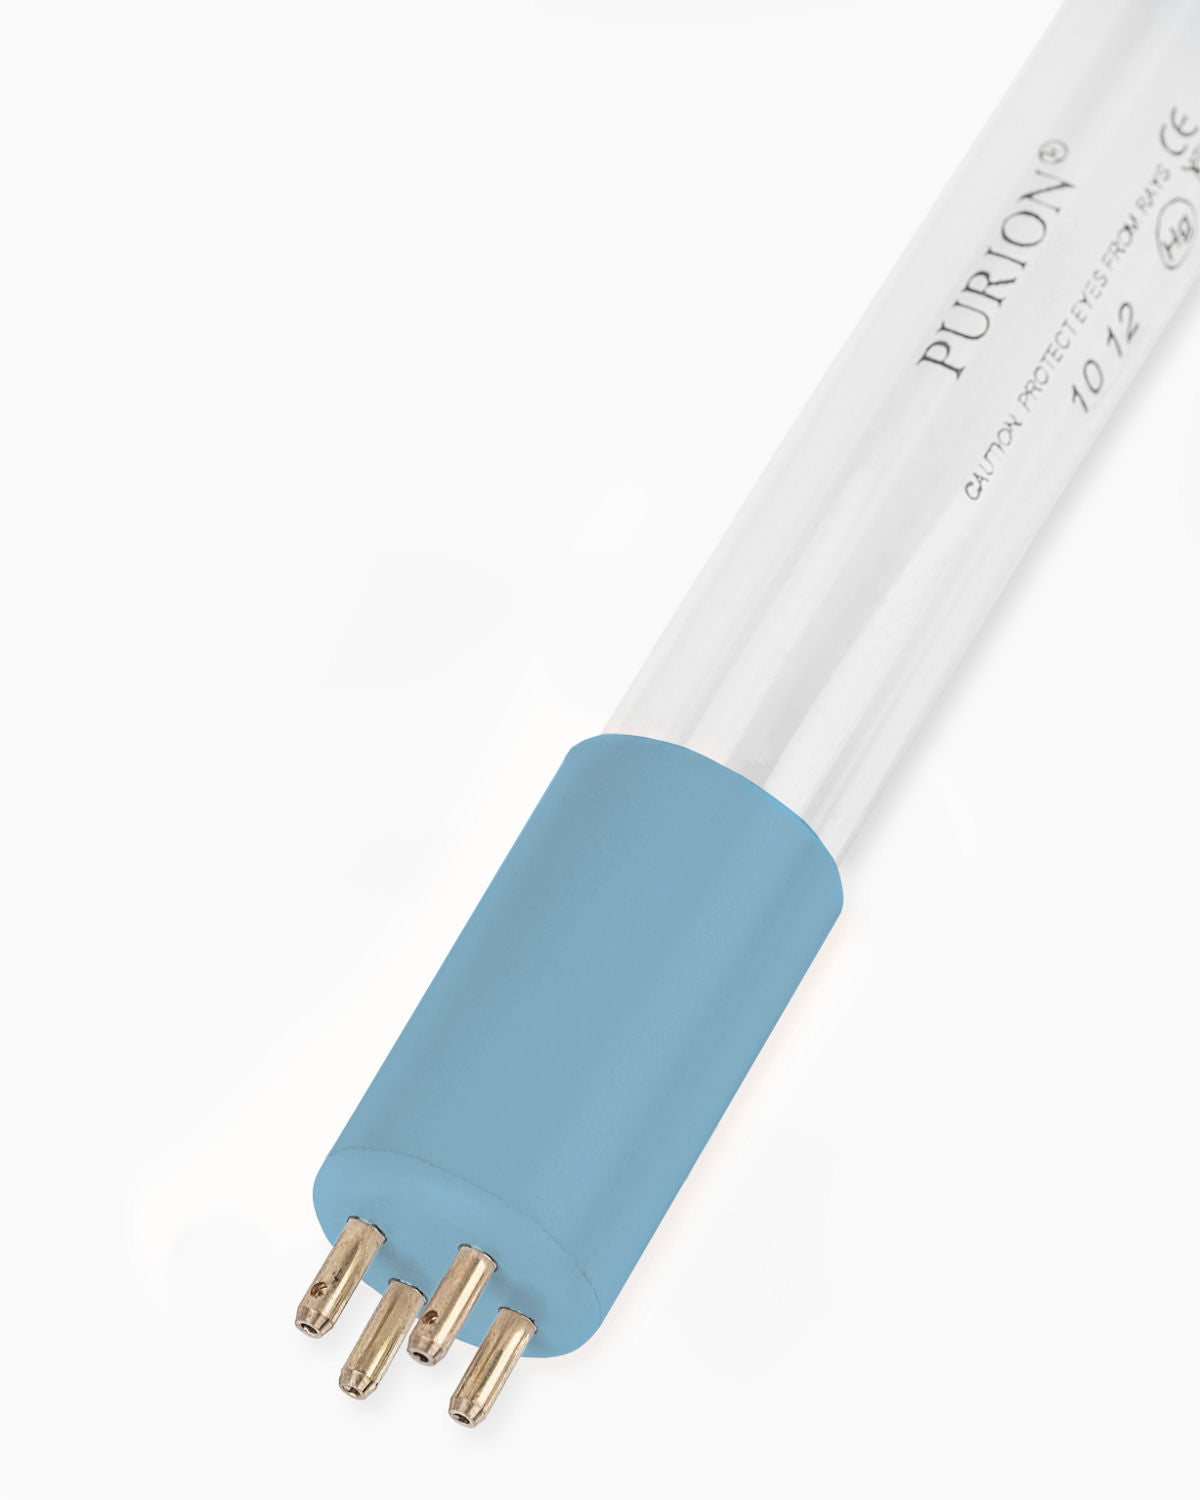 Eine PURION IBC DN225 48W OTC SPL BS Blaulichtröhre von UV Concept GmbH auf weißem Hintergrund, die eine kühle und beruhigende Aura ausstrahlt.